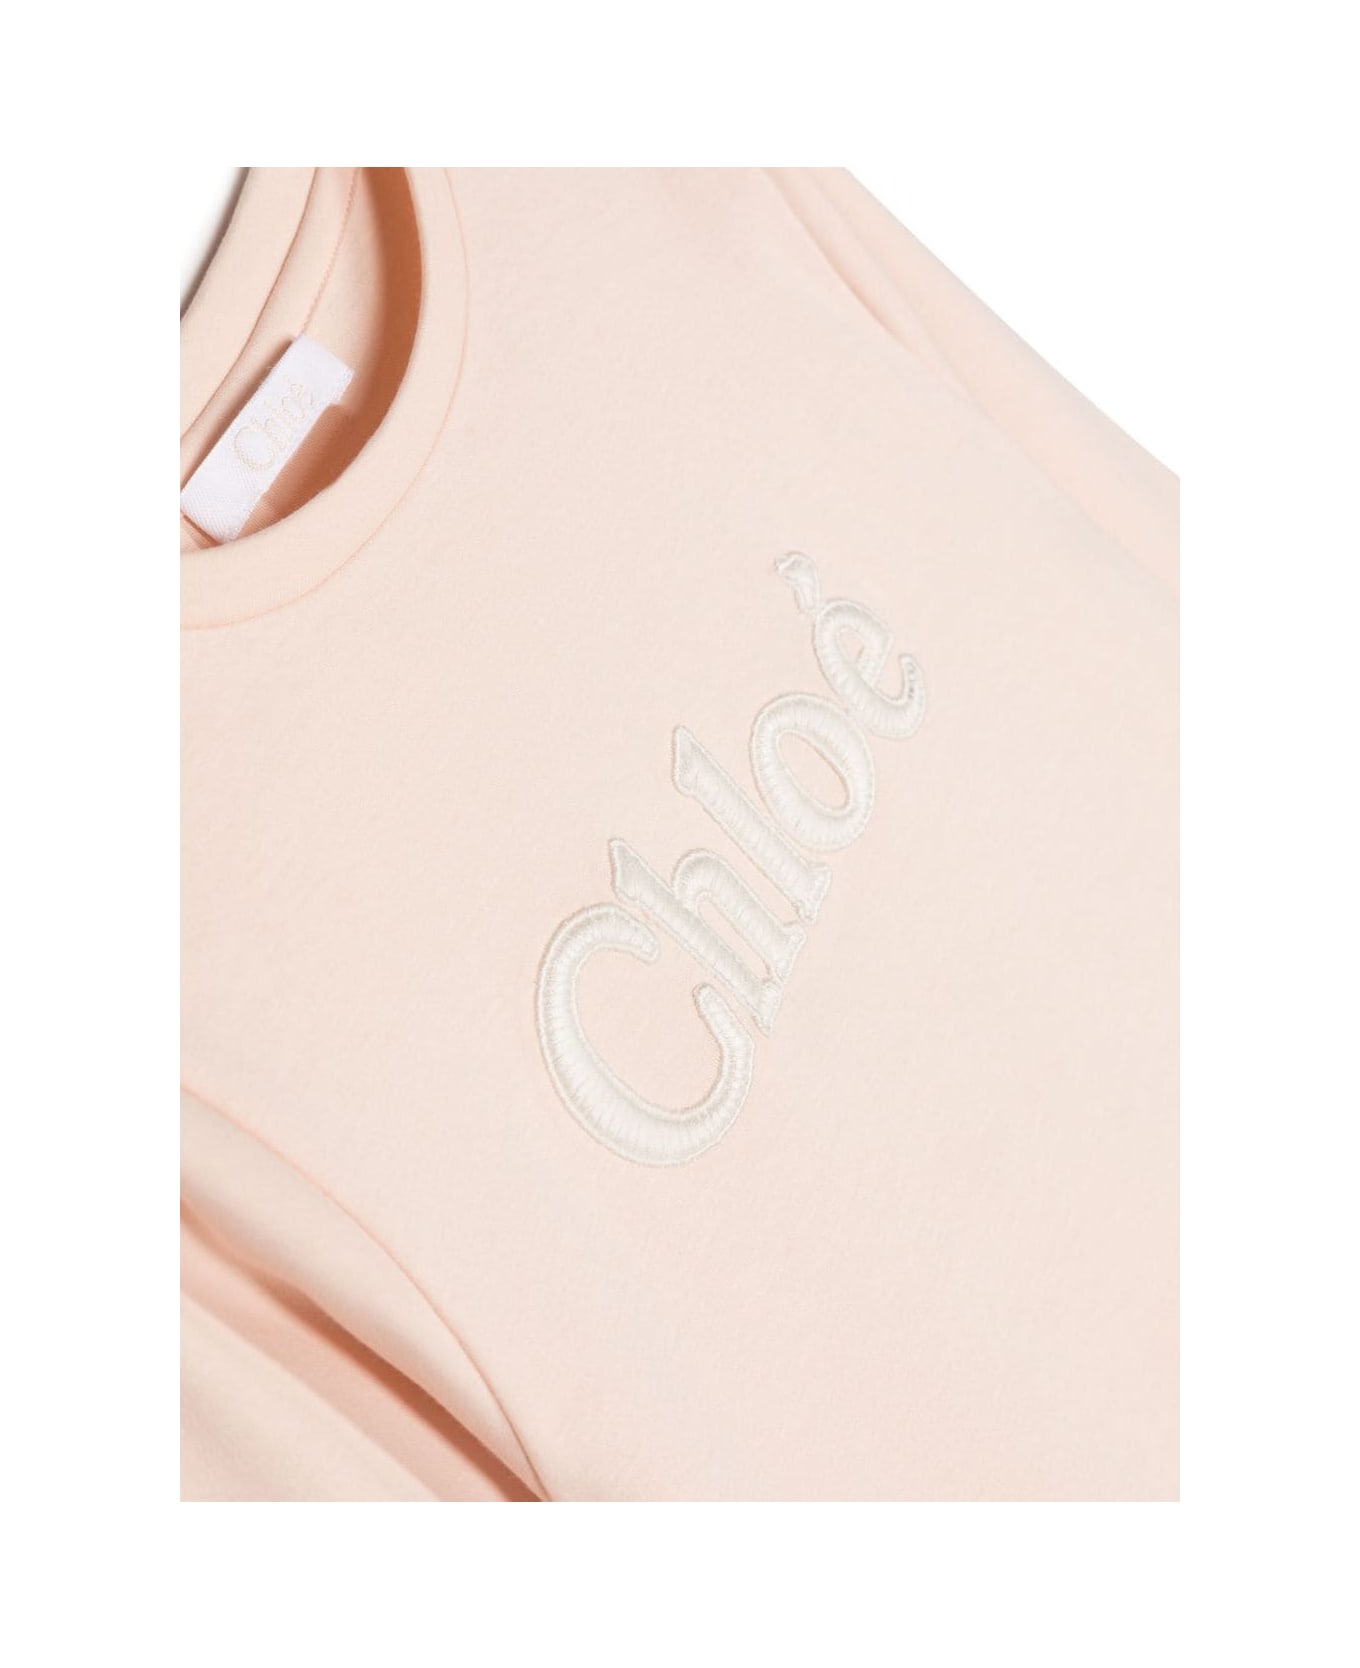 Chloé Chloe T-shirt Bianca Cipria In Jersey Di Cotone Bambina - Bianco Tシャツ＆ポロシャツ